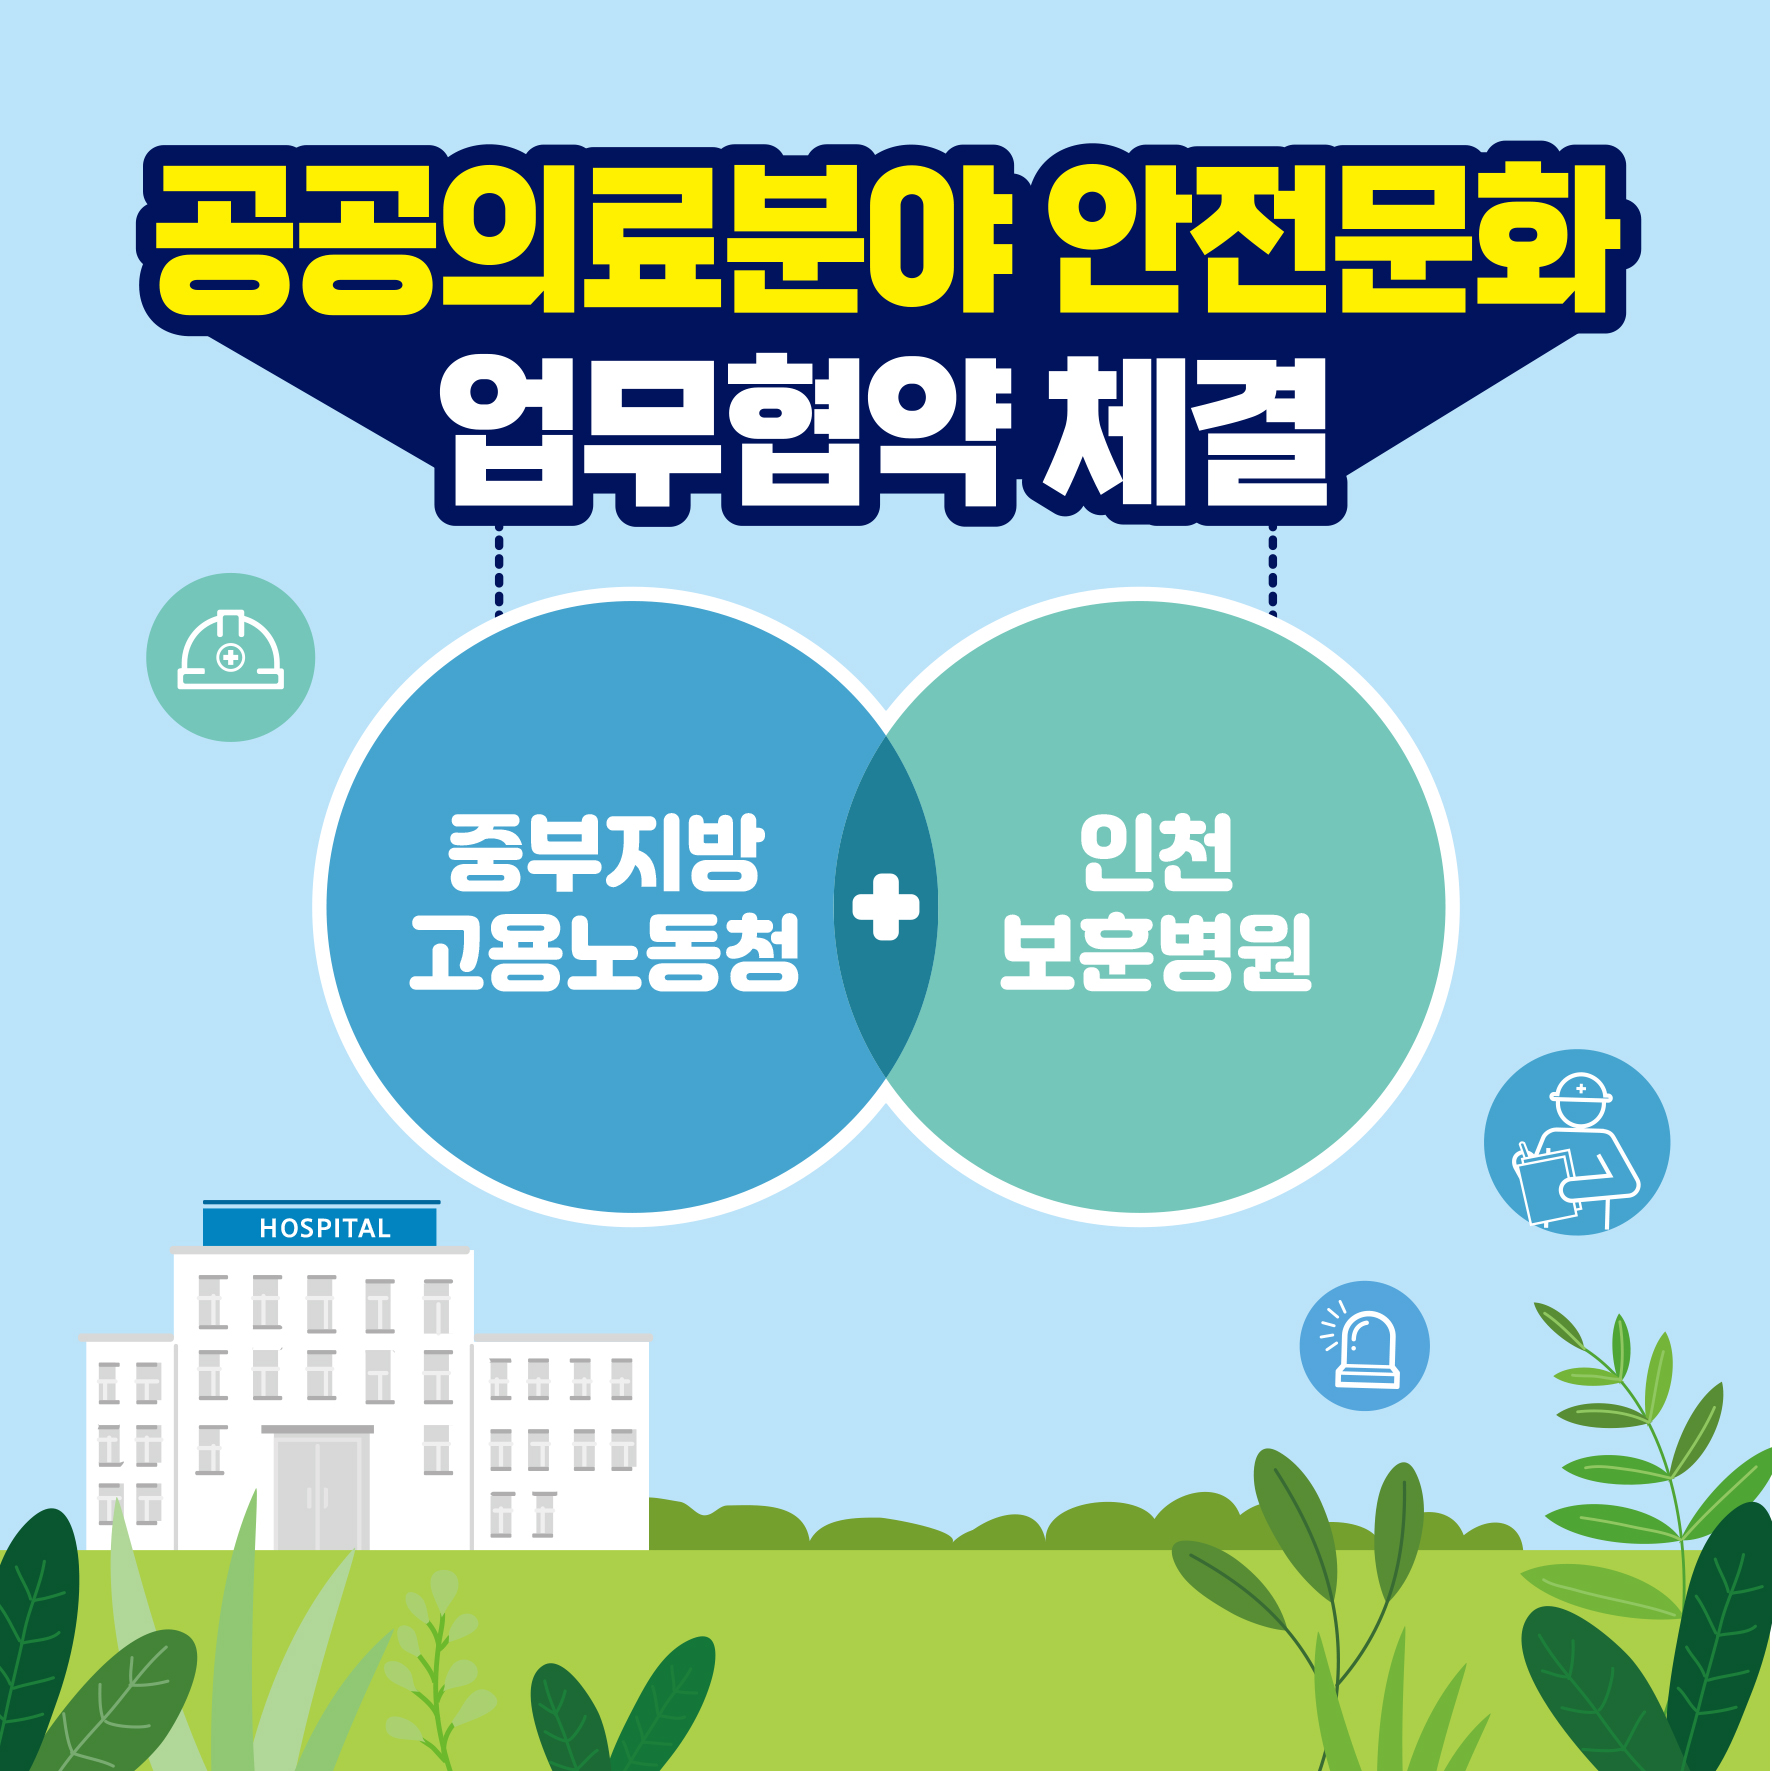 [인천] 공공의료분야 안전문화 업무협약 체결(중부청, 인천보훈병원)